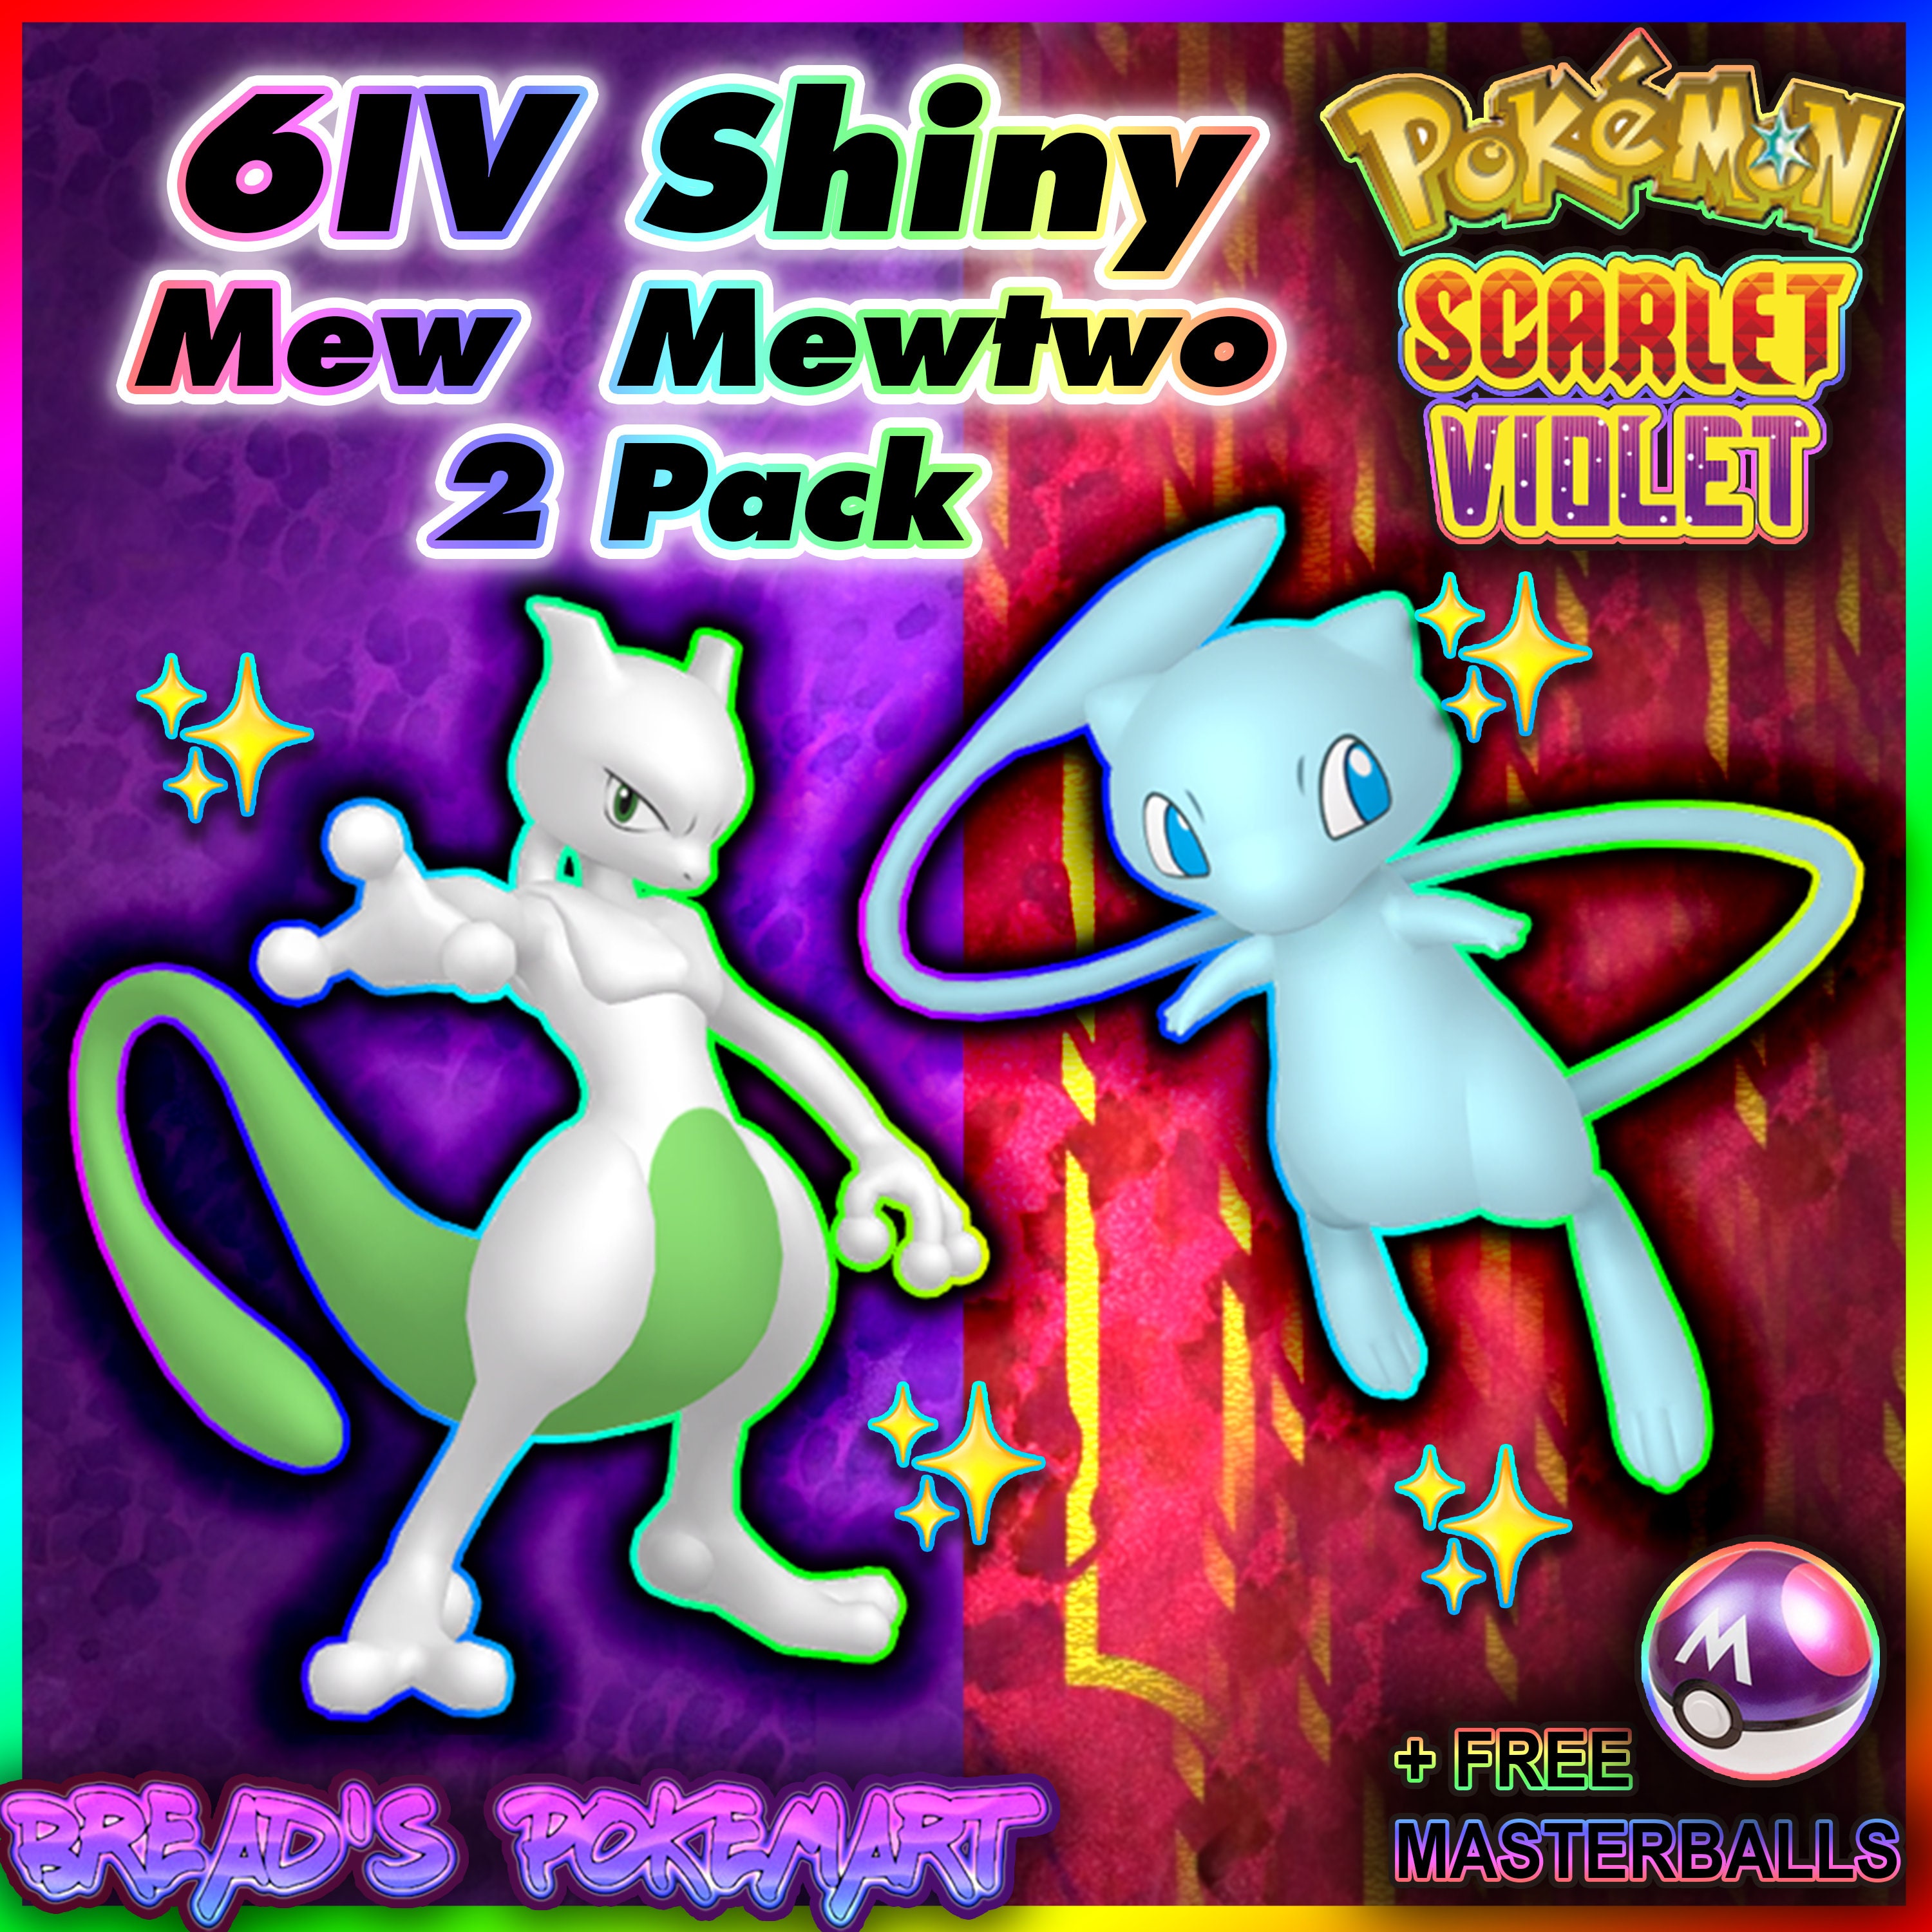 Mew e Mewtwo chegam a Pokémon Scarlet & Violet em evento especial